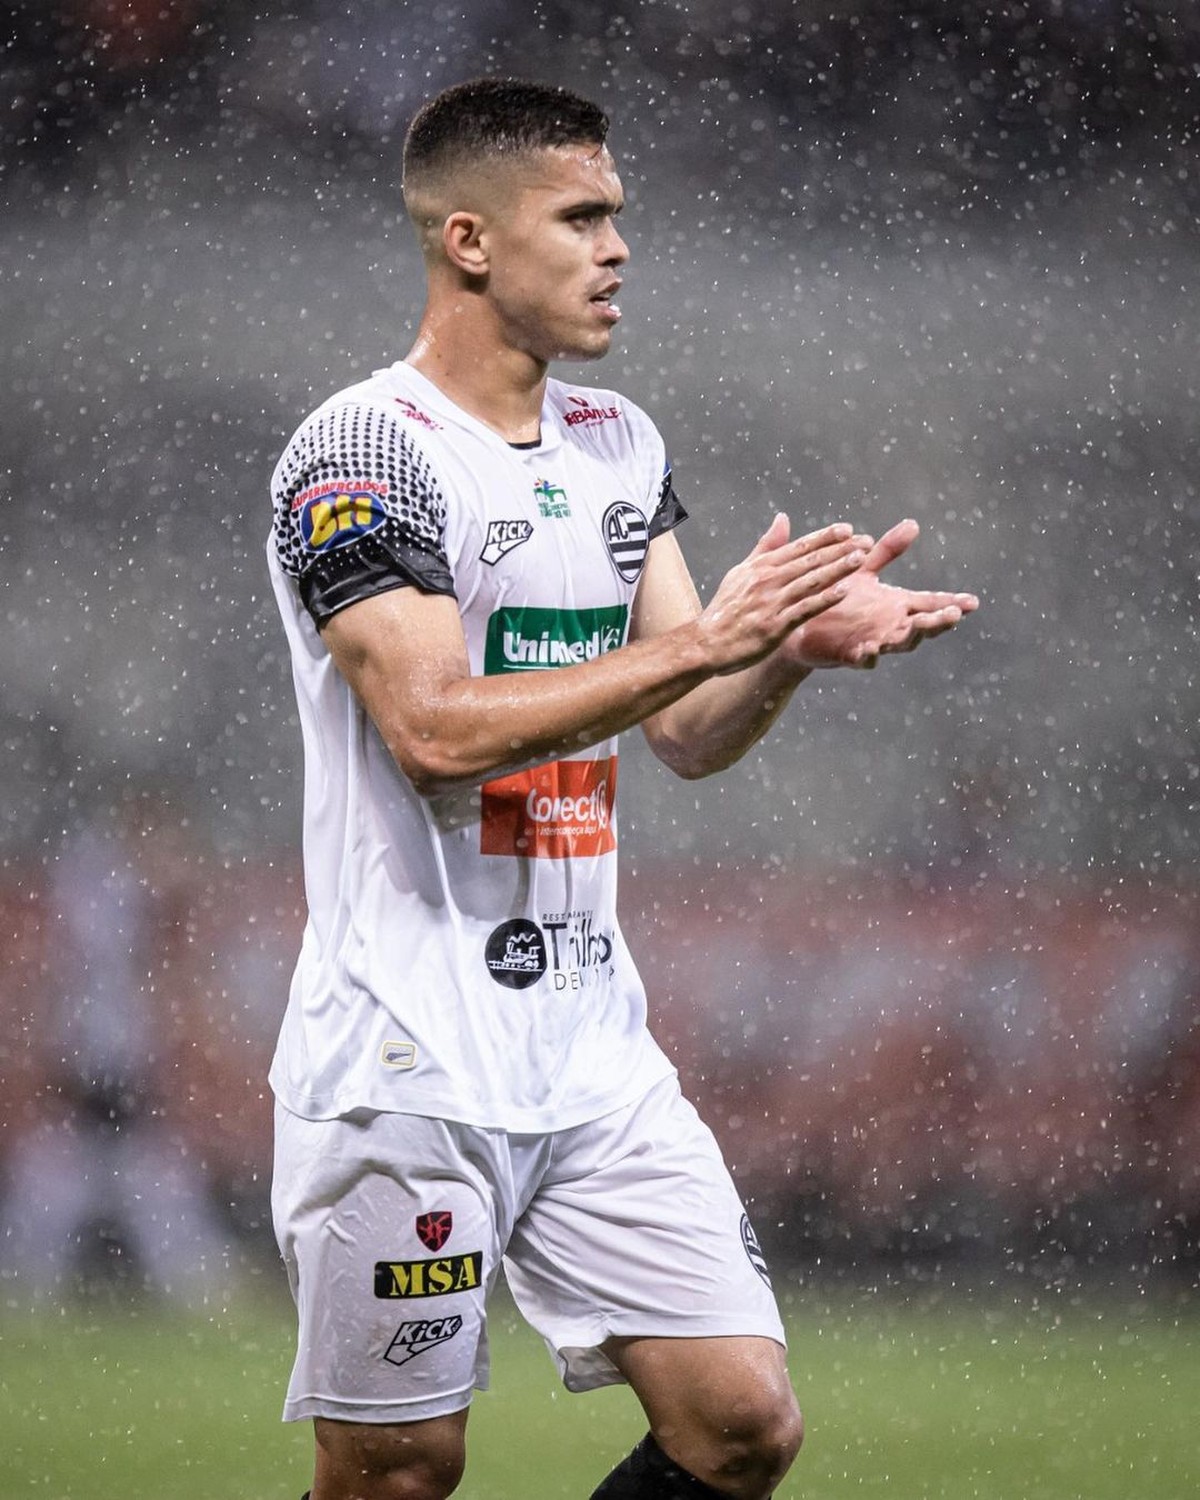 Player: Rafael Lucas Cardoso dos Santos